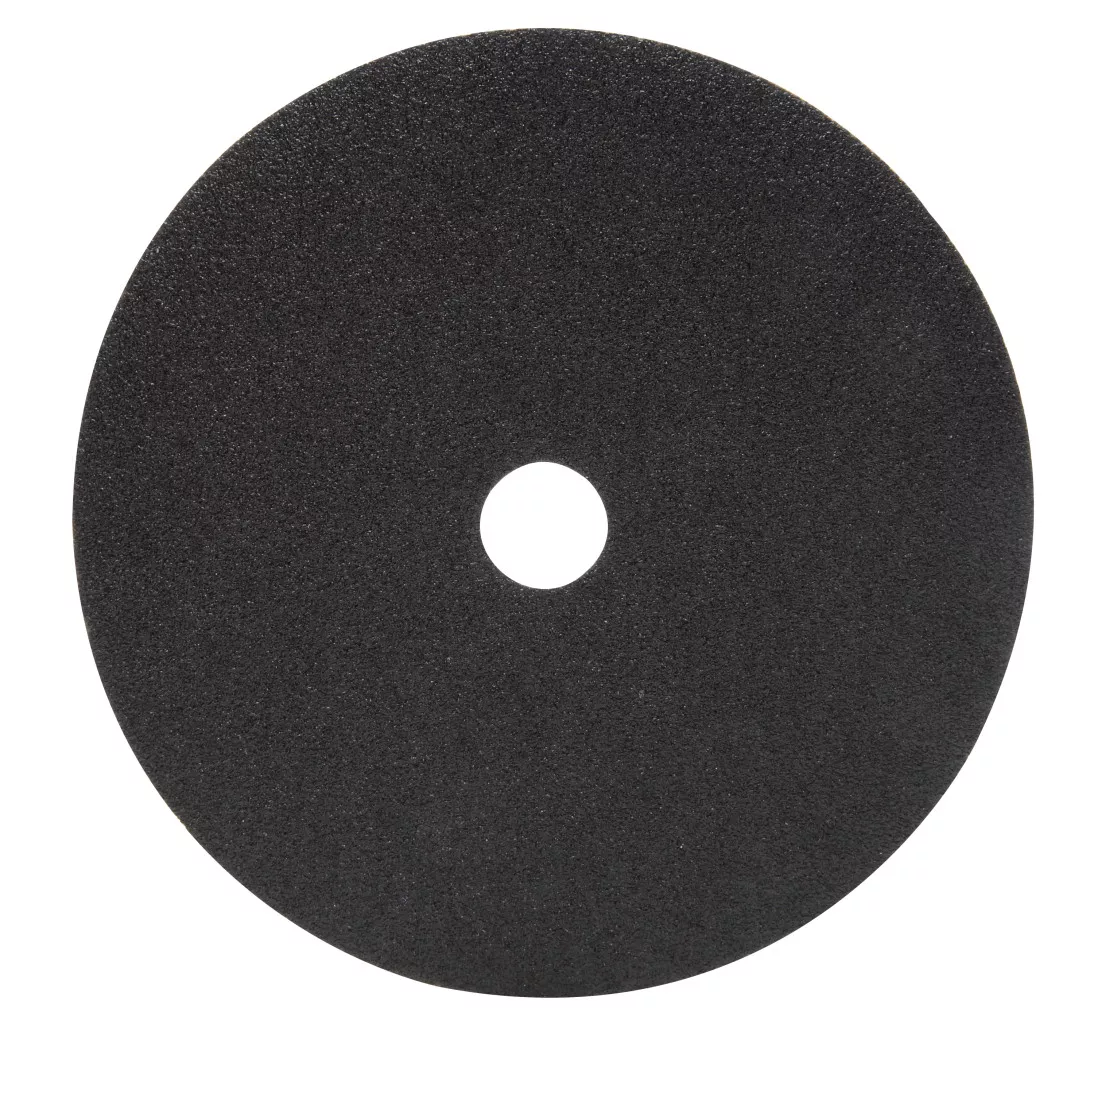 3M™ Fibre Disc 501C, 60, 7 in x 7/8 in, Die 700BB, 25 per inner, 100 per
case